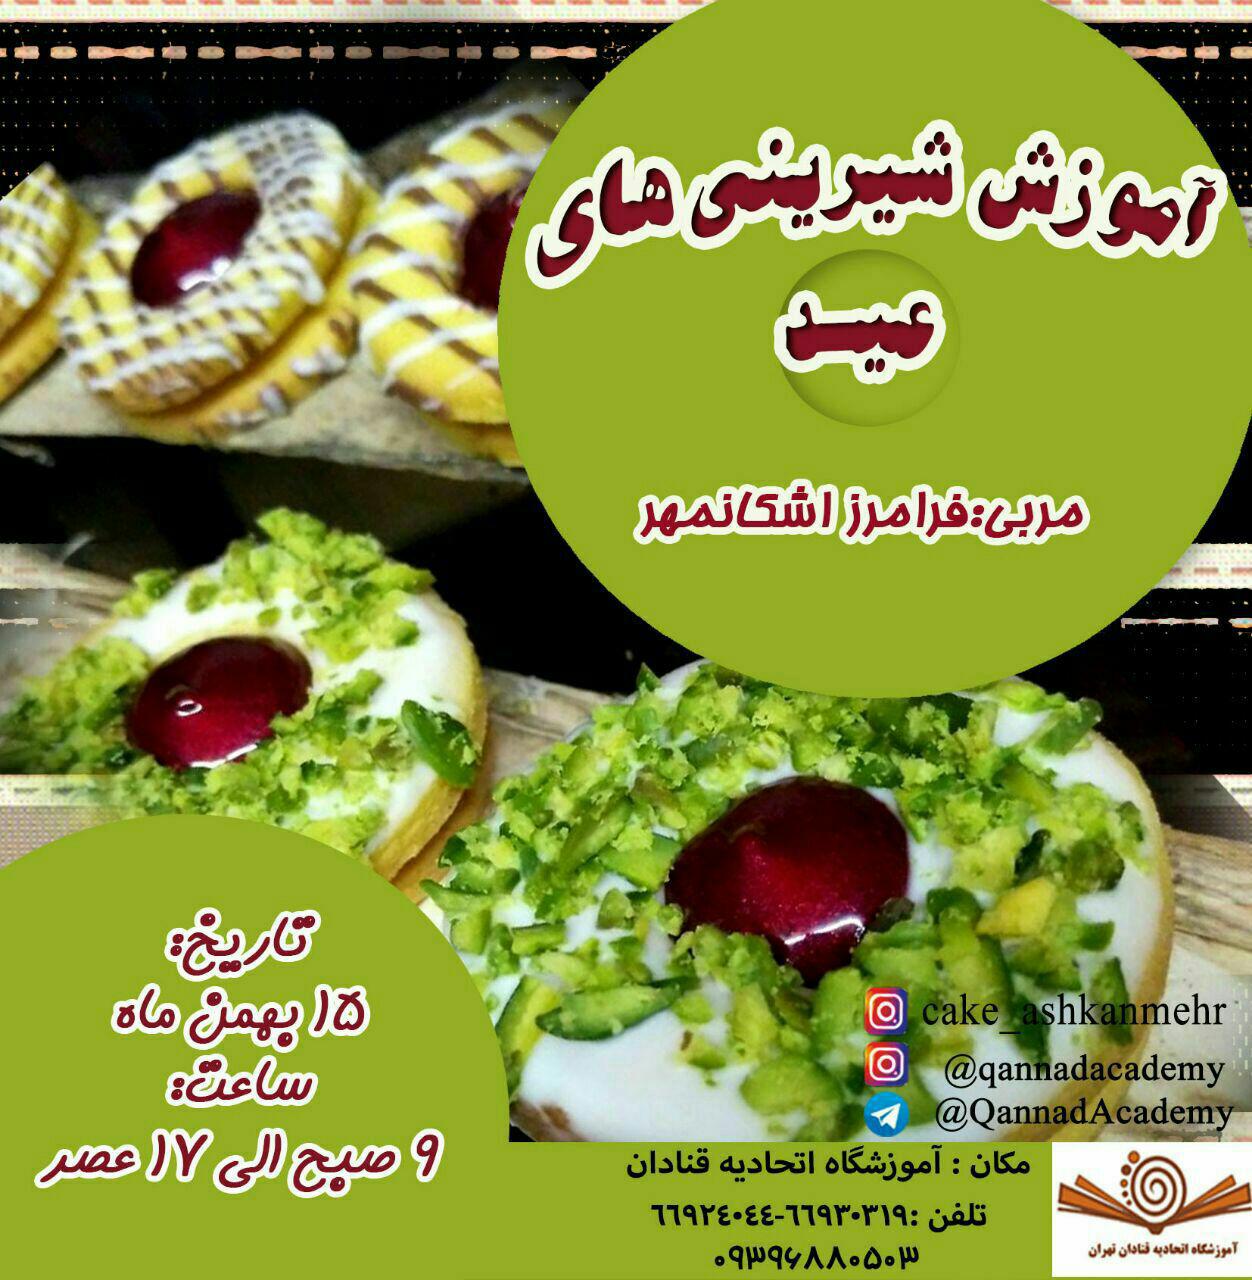 آموزش انواع شیرینی های عید در آموزشگاه اتحادیه صنف قنادان تهران